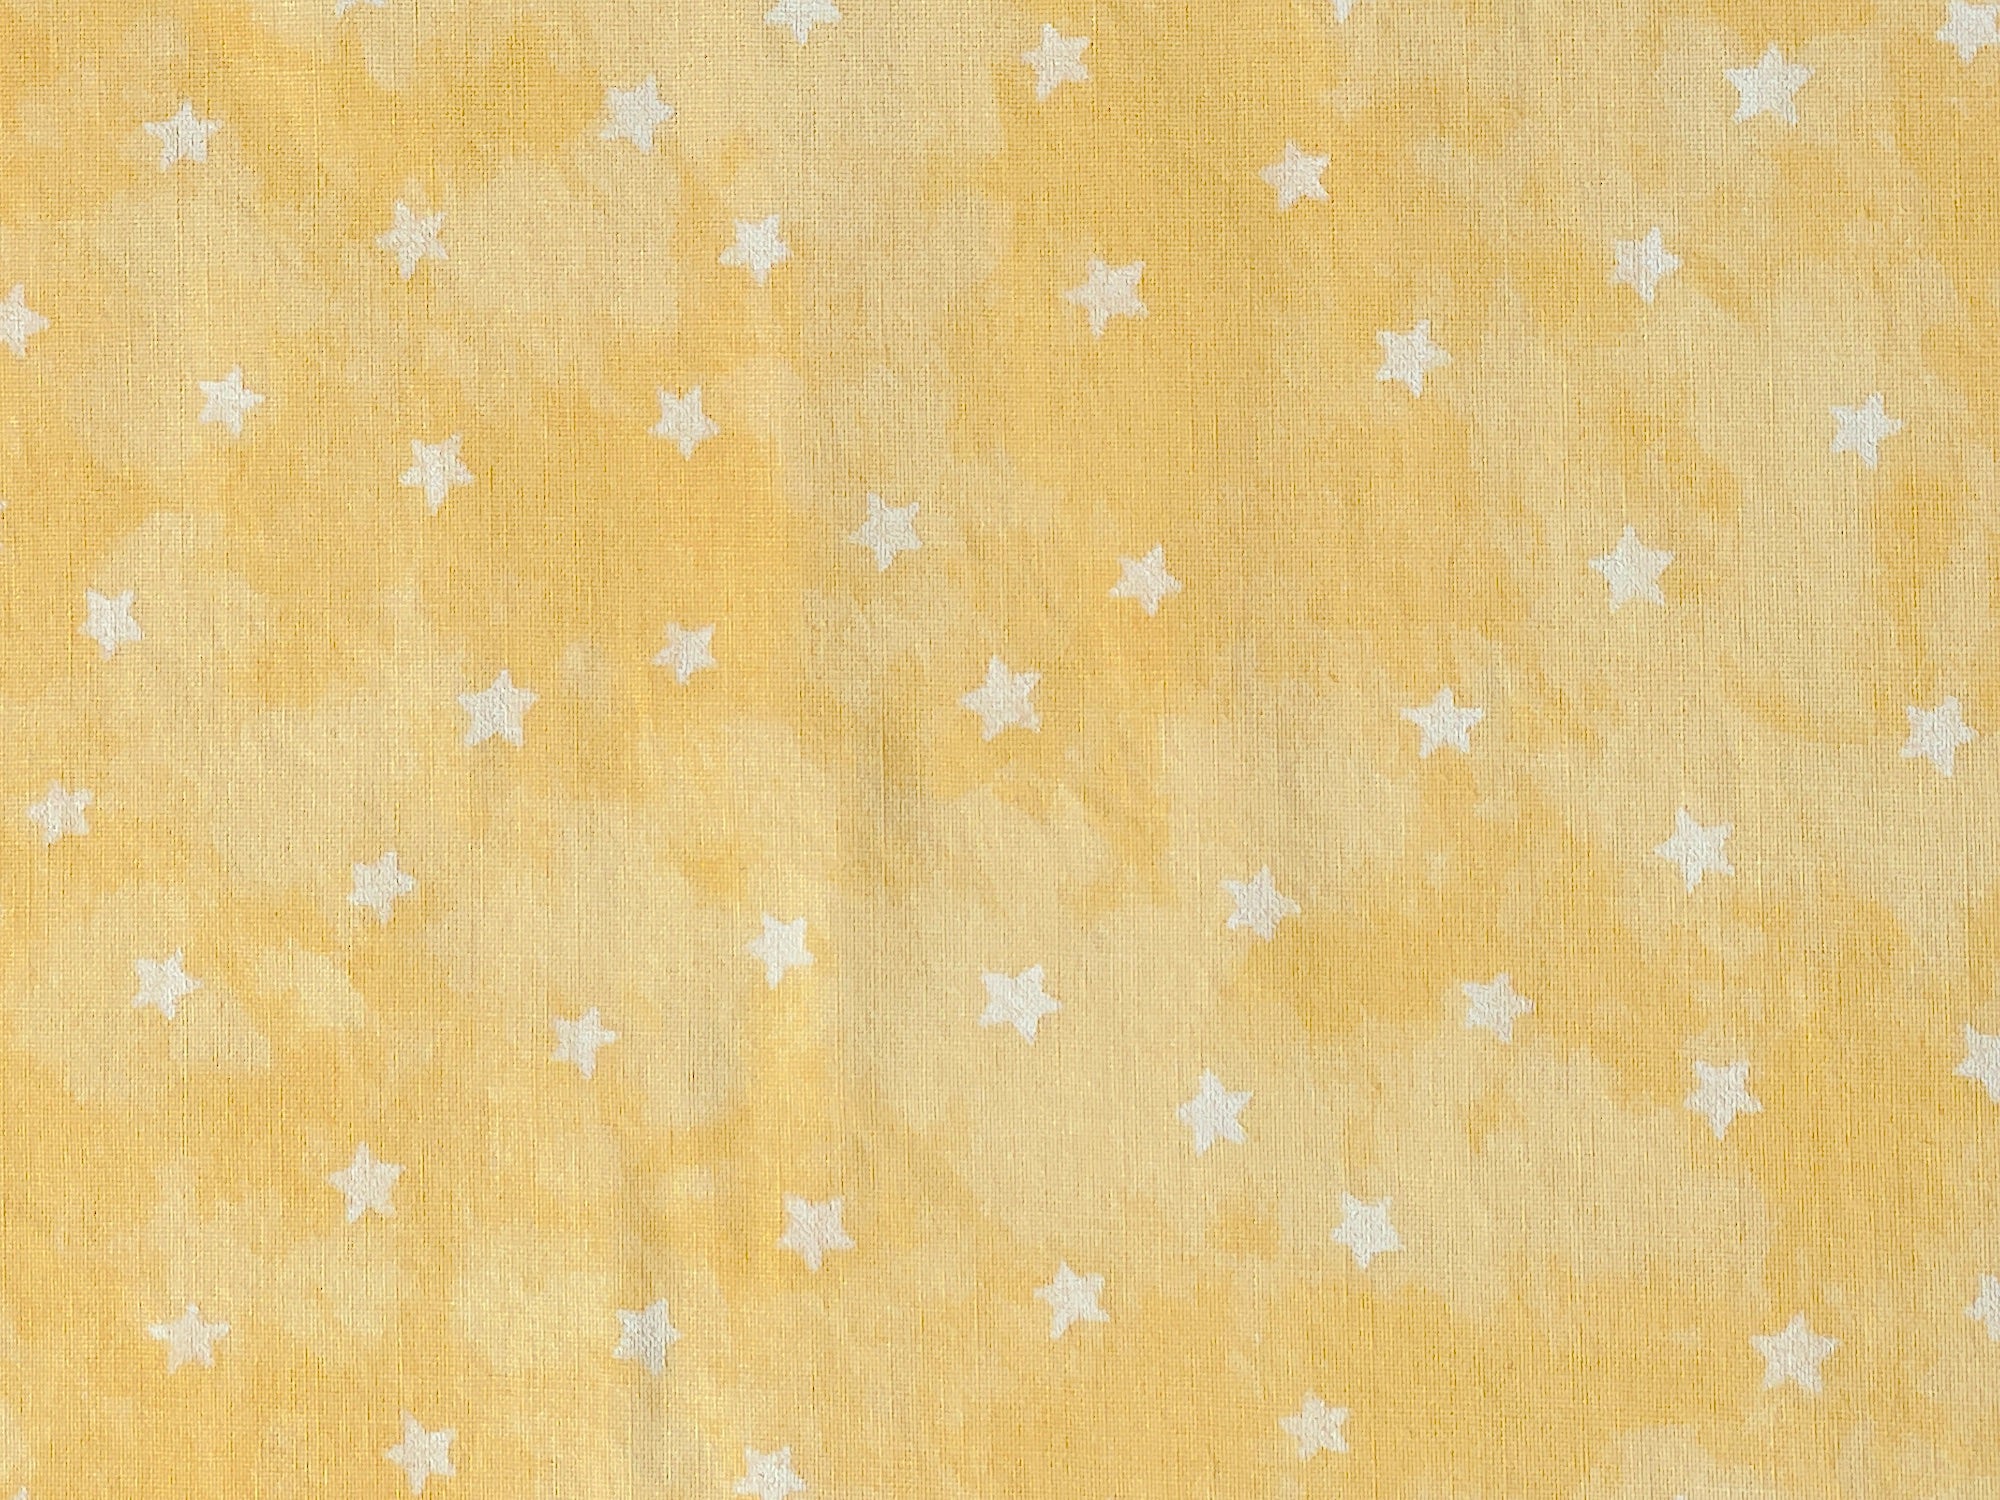 yellow fabric with white stars